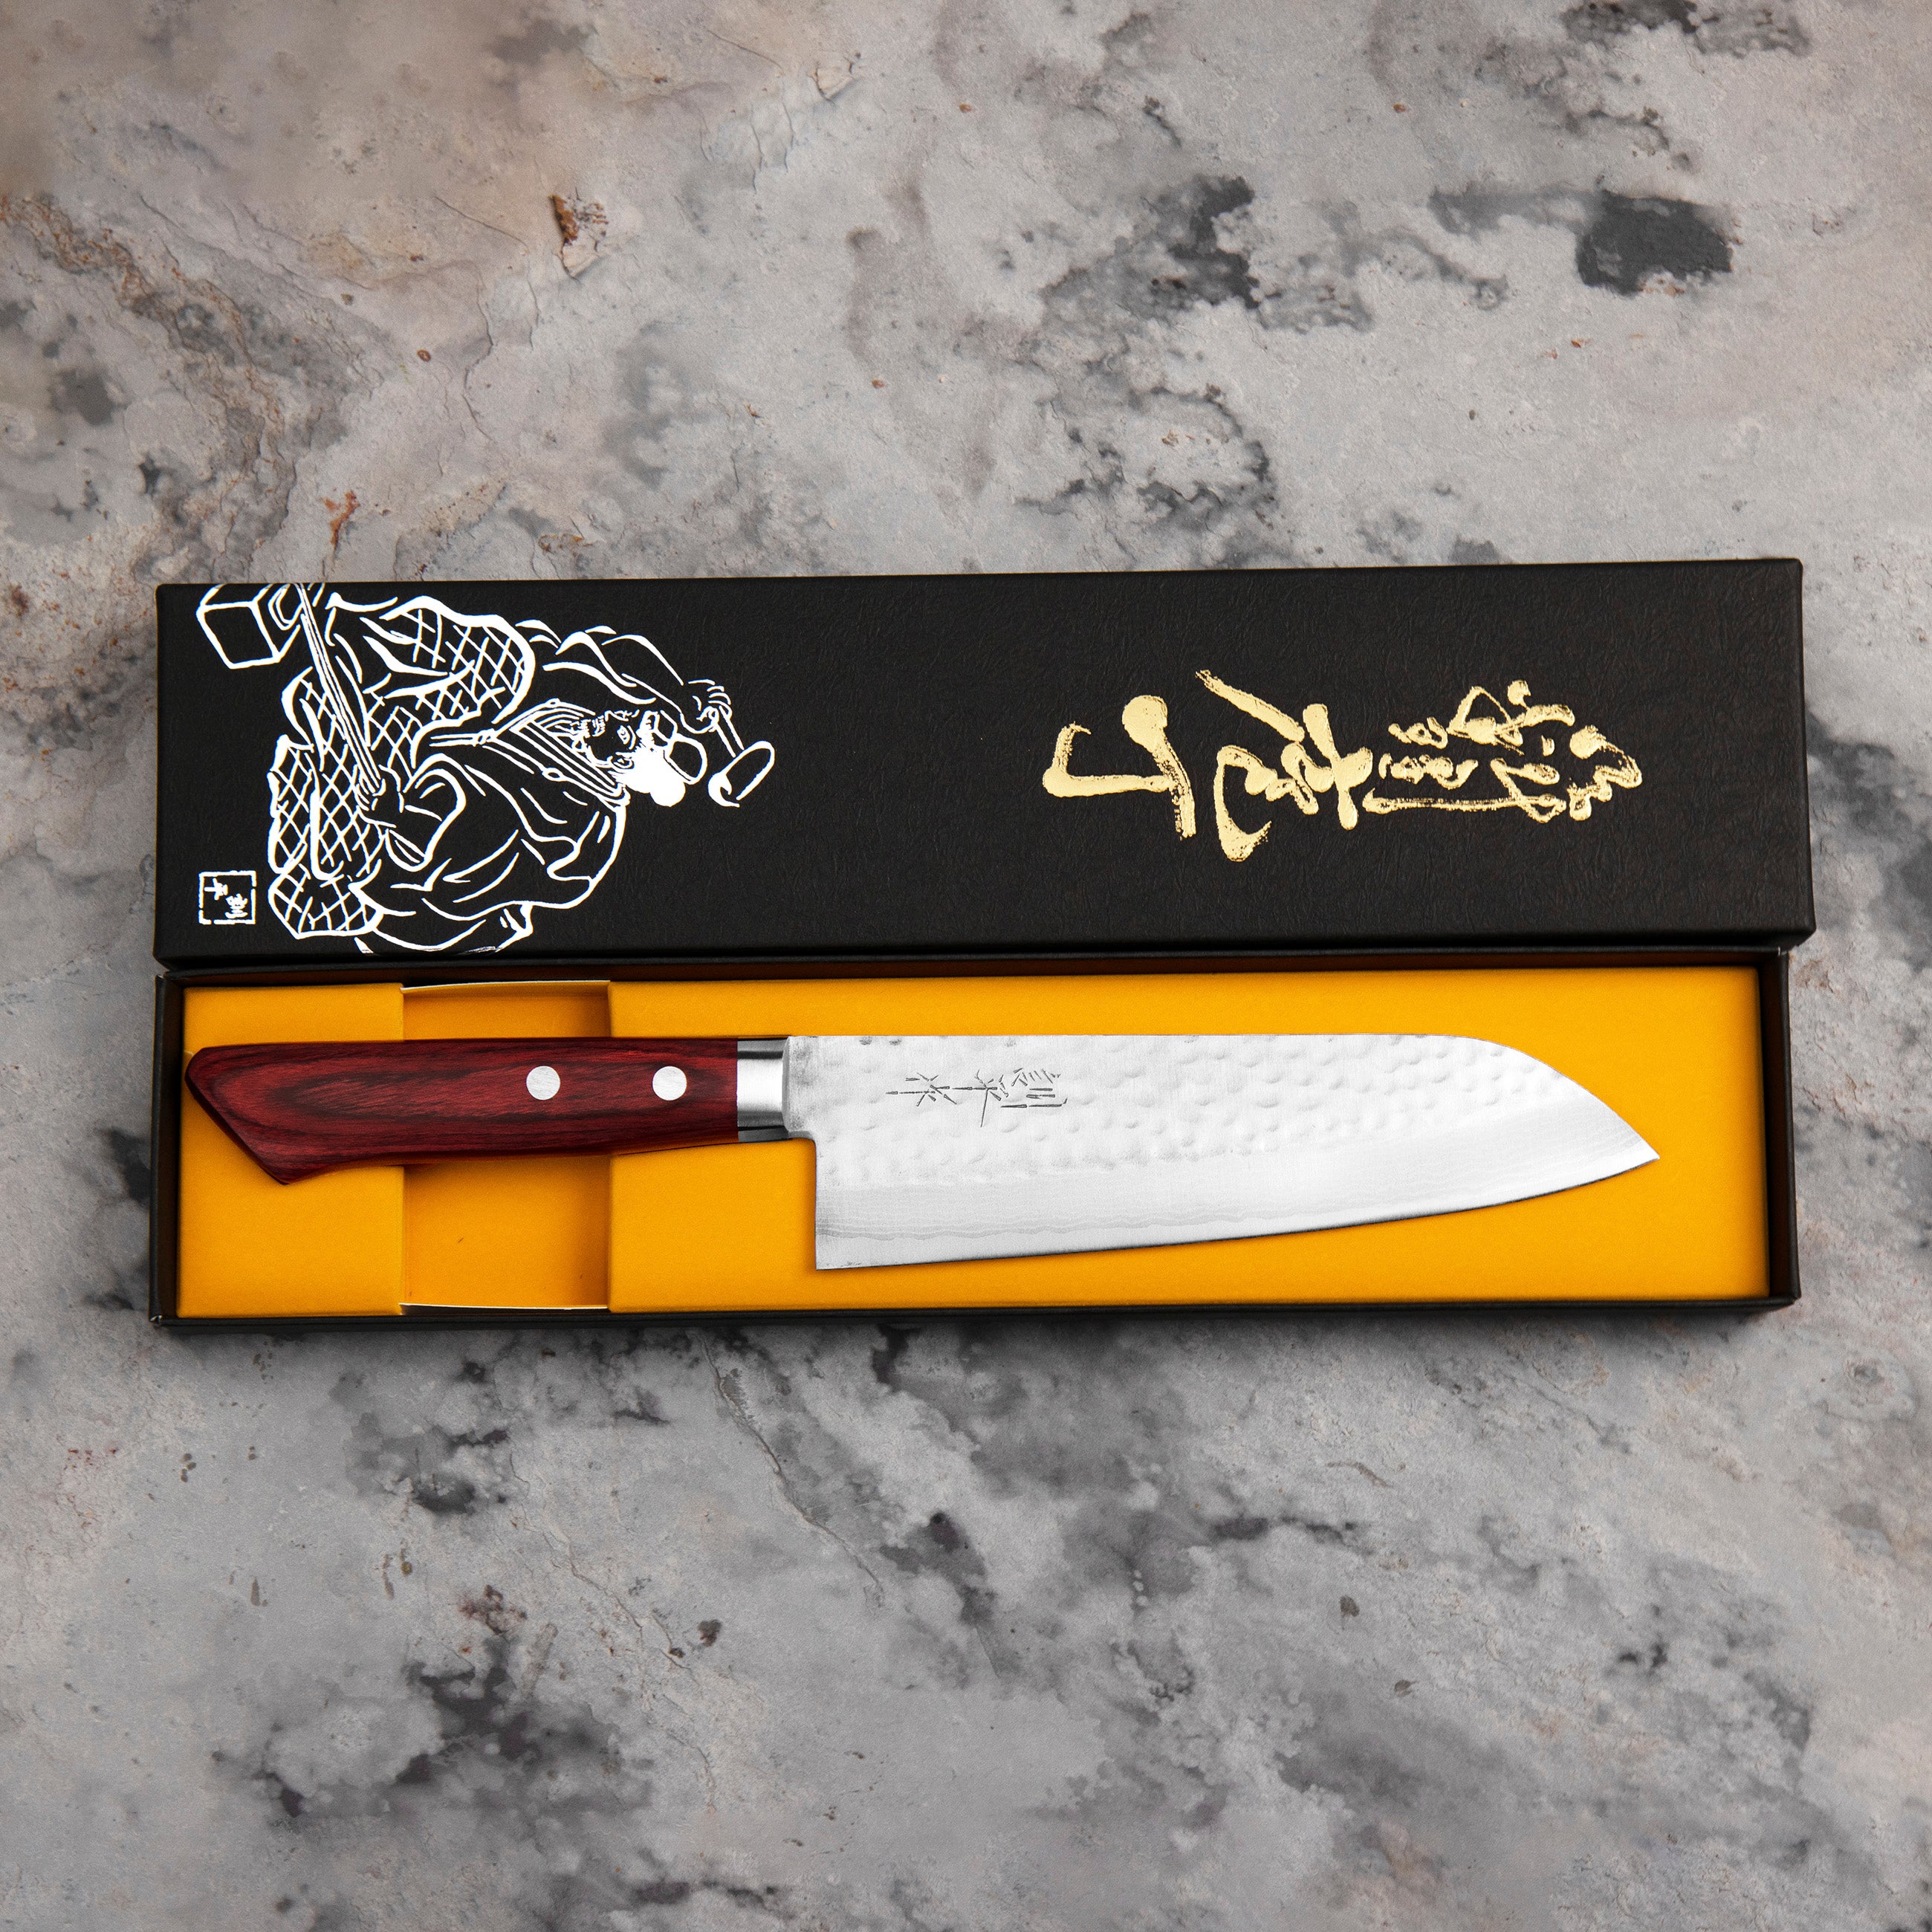 Nůž Santoku 17 cm Kunio Masutani VG-10 Hammered Red Damascus